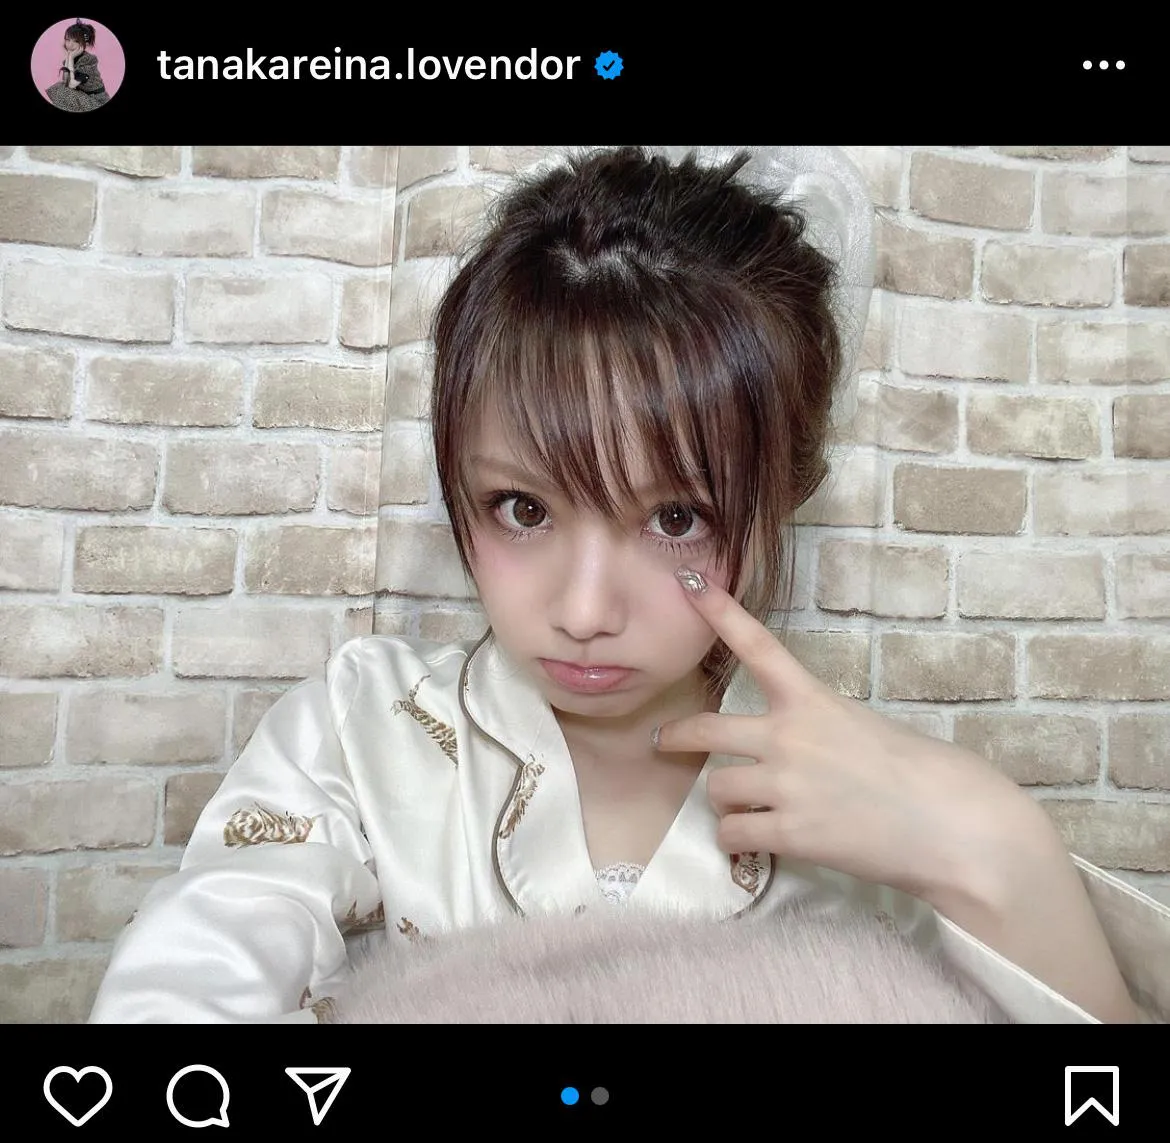 ※画像は田中れいな(tanakareina.lovendor)公式Instagramのスクリーンショット